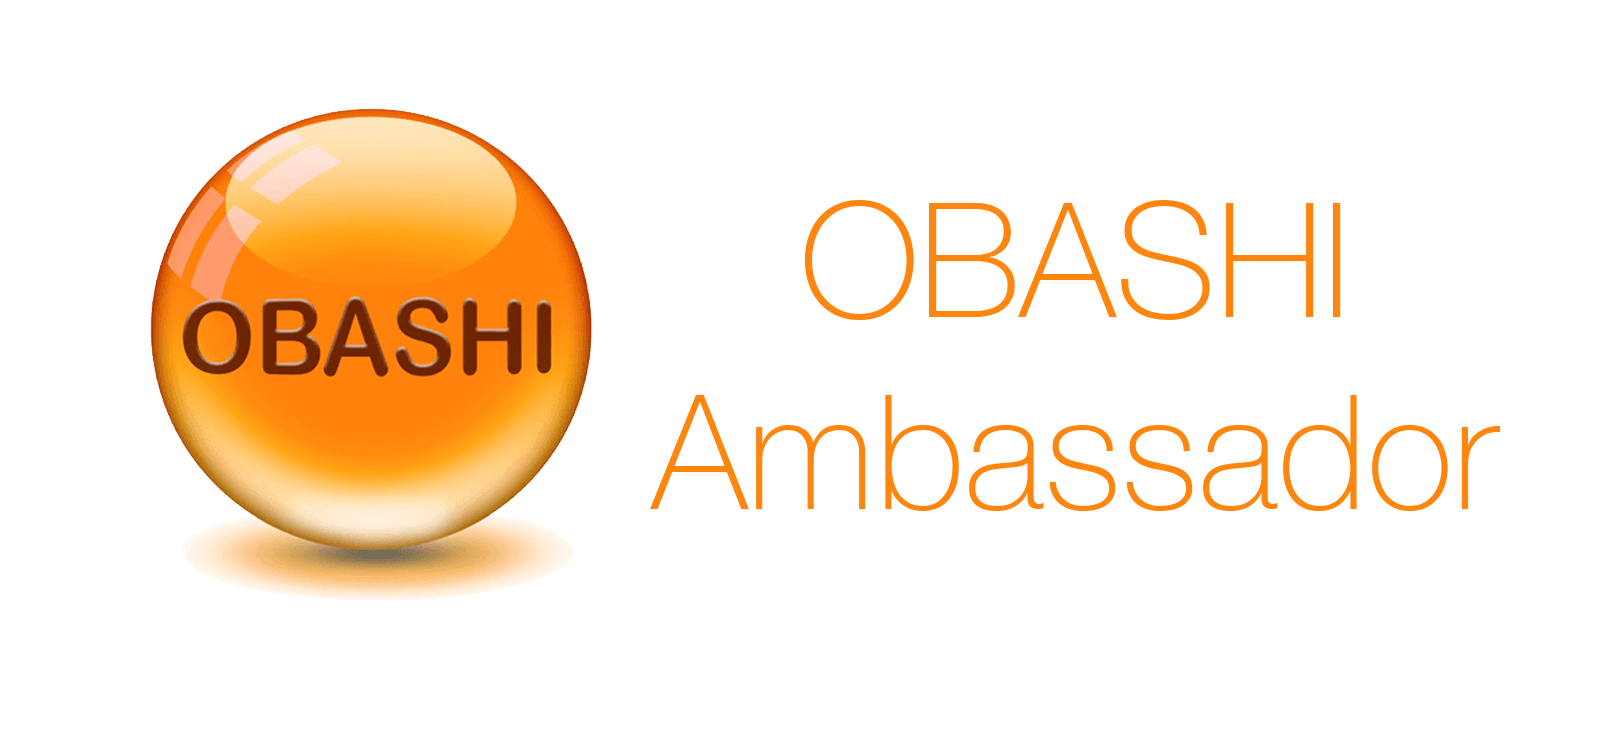 OBASHI International Ambassador badge